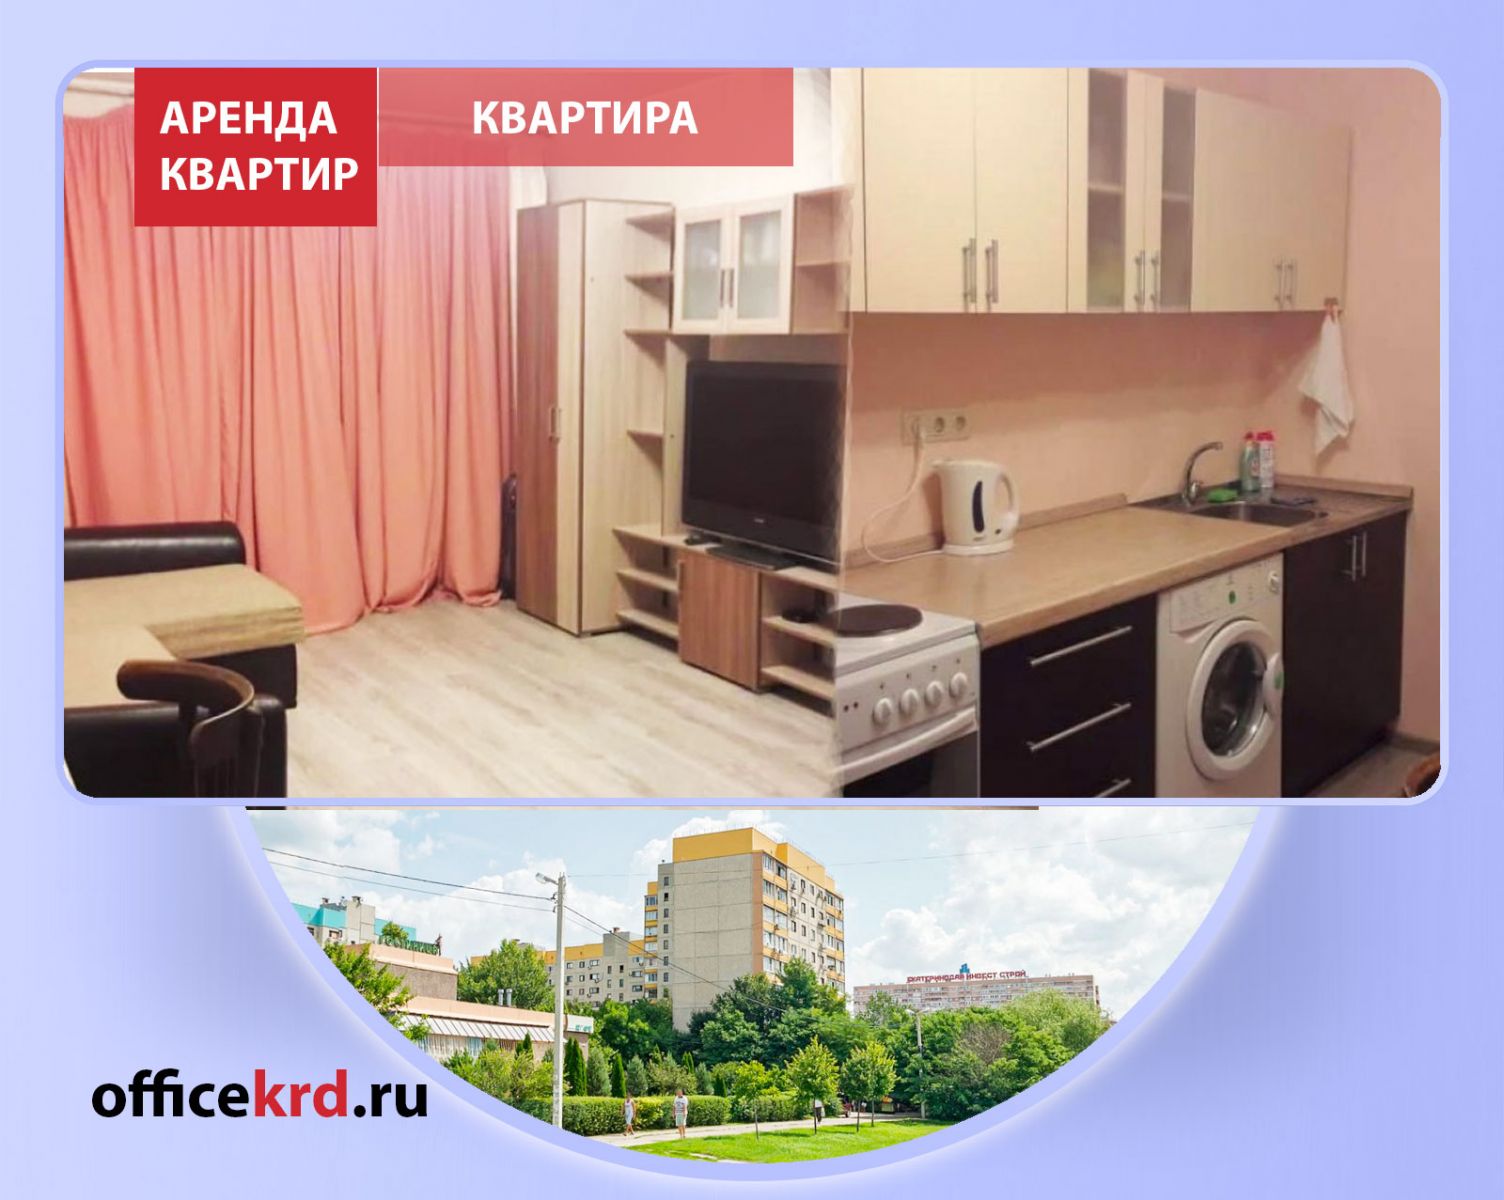 Квартиры в Краснодаре недорого, снять на длительный период, снимите в аренду недорого квартиру от собственника ЭНКА